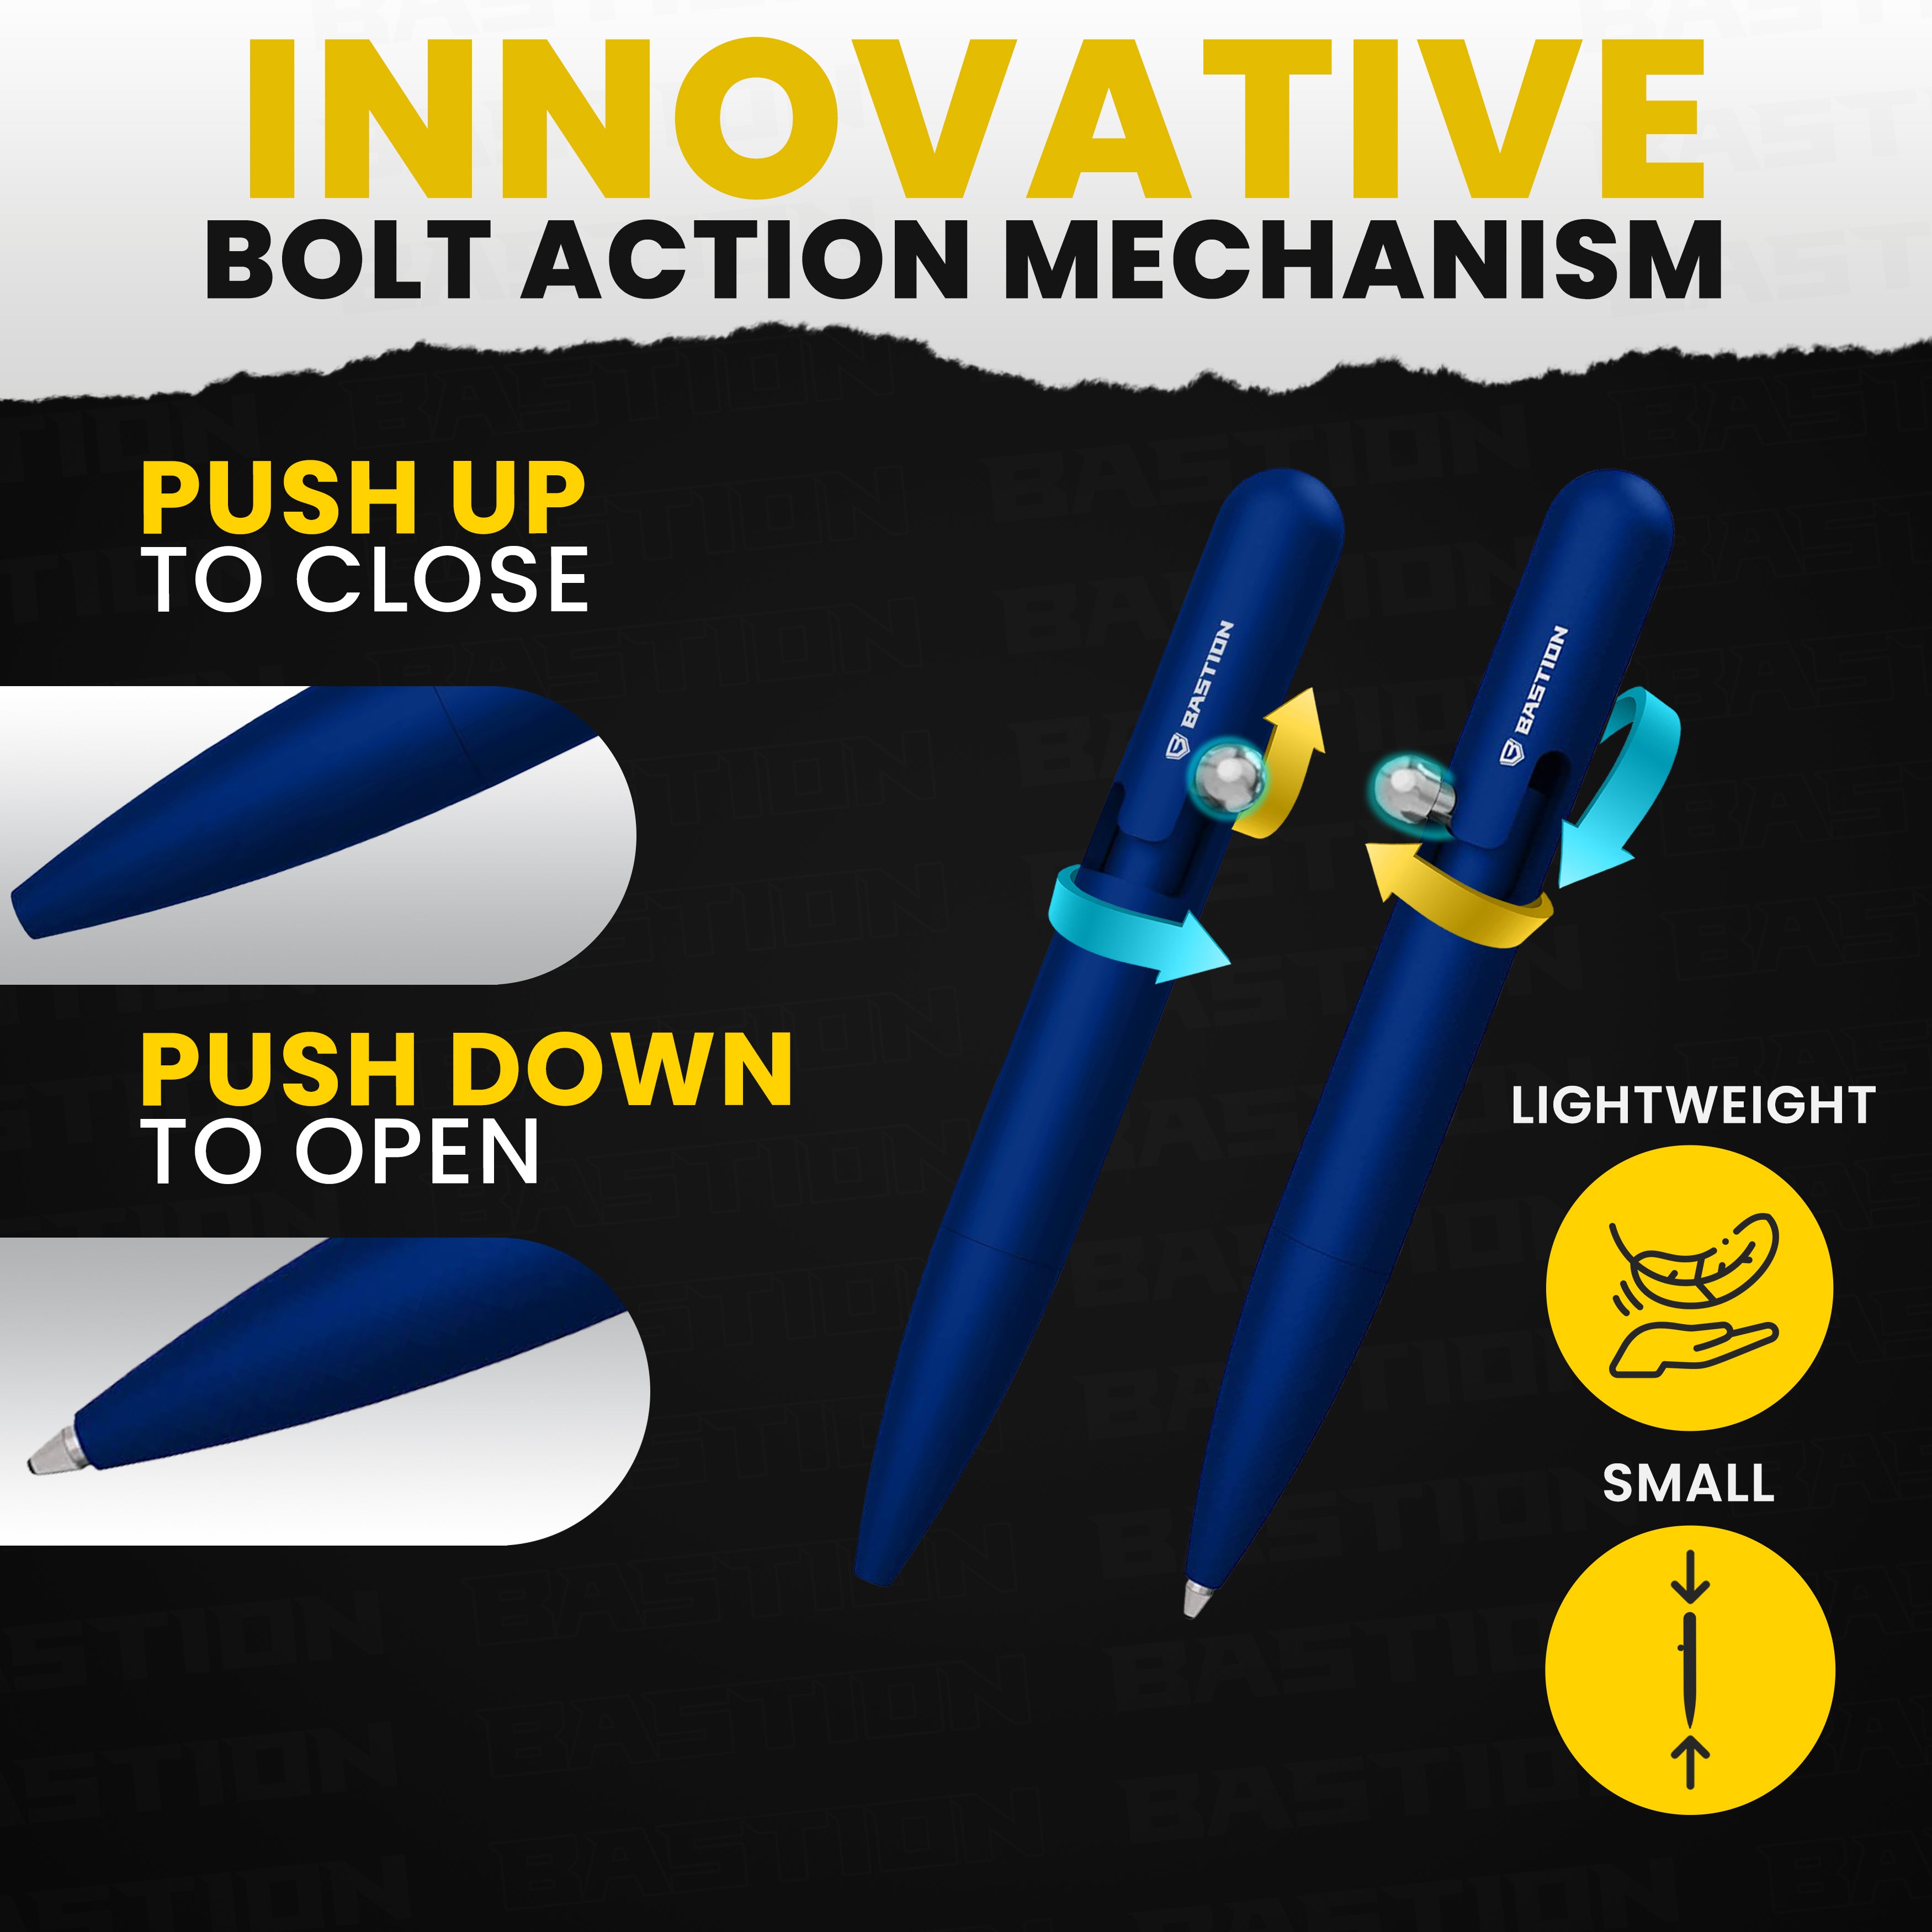 Mini Clipless Bolt Action Pen by Bastion® - Bastion Bolt Action Pen